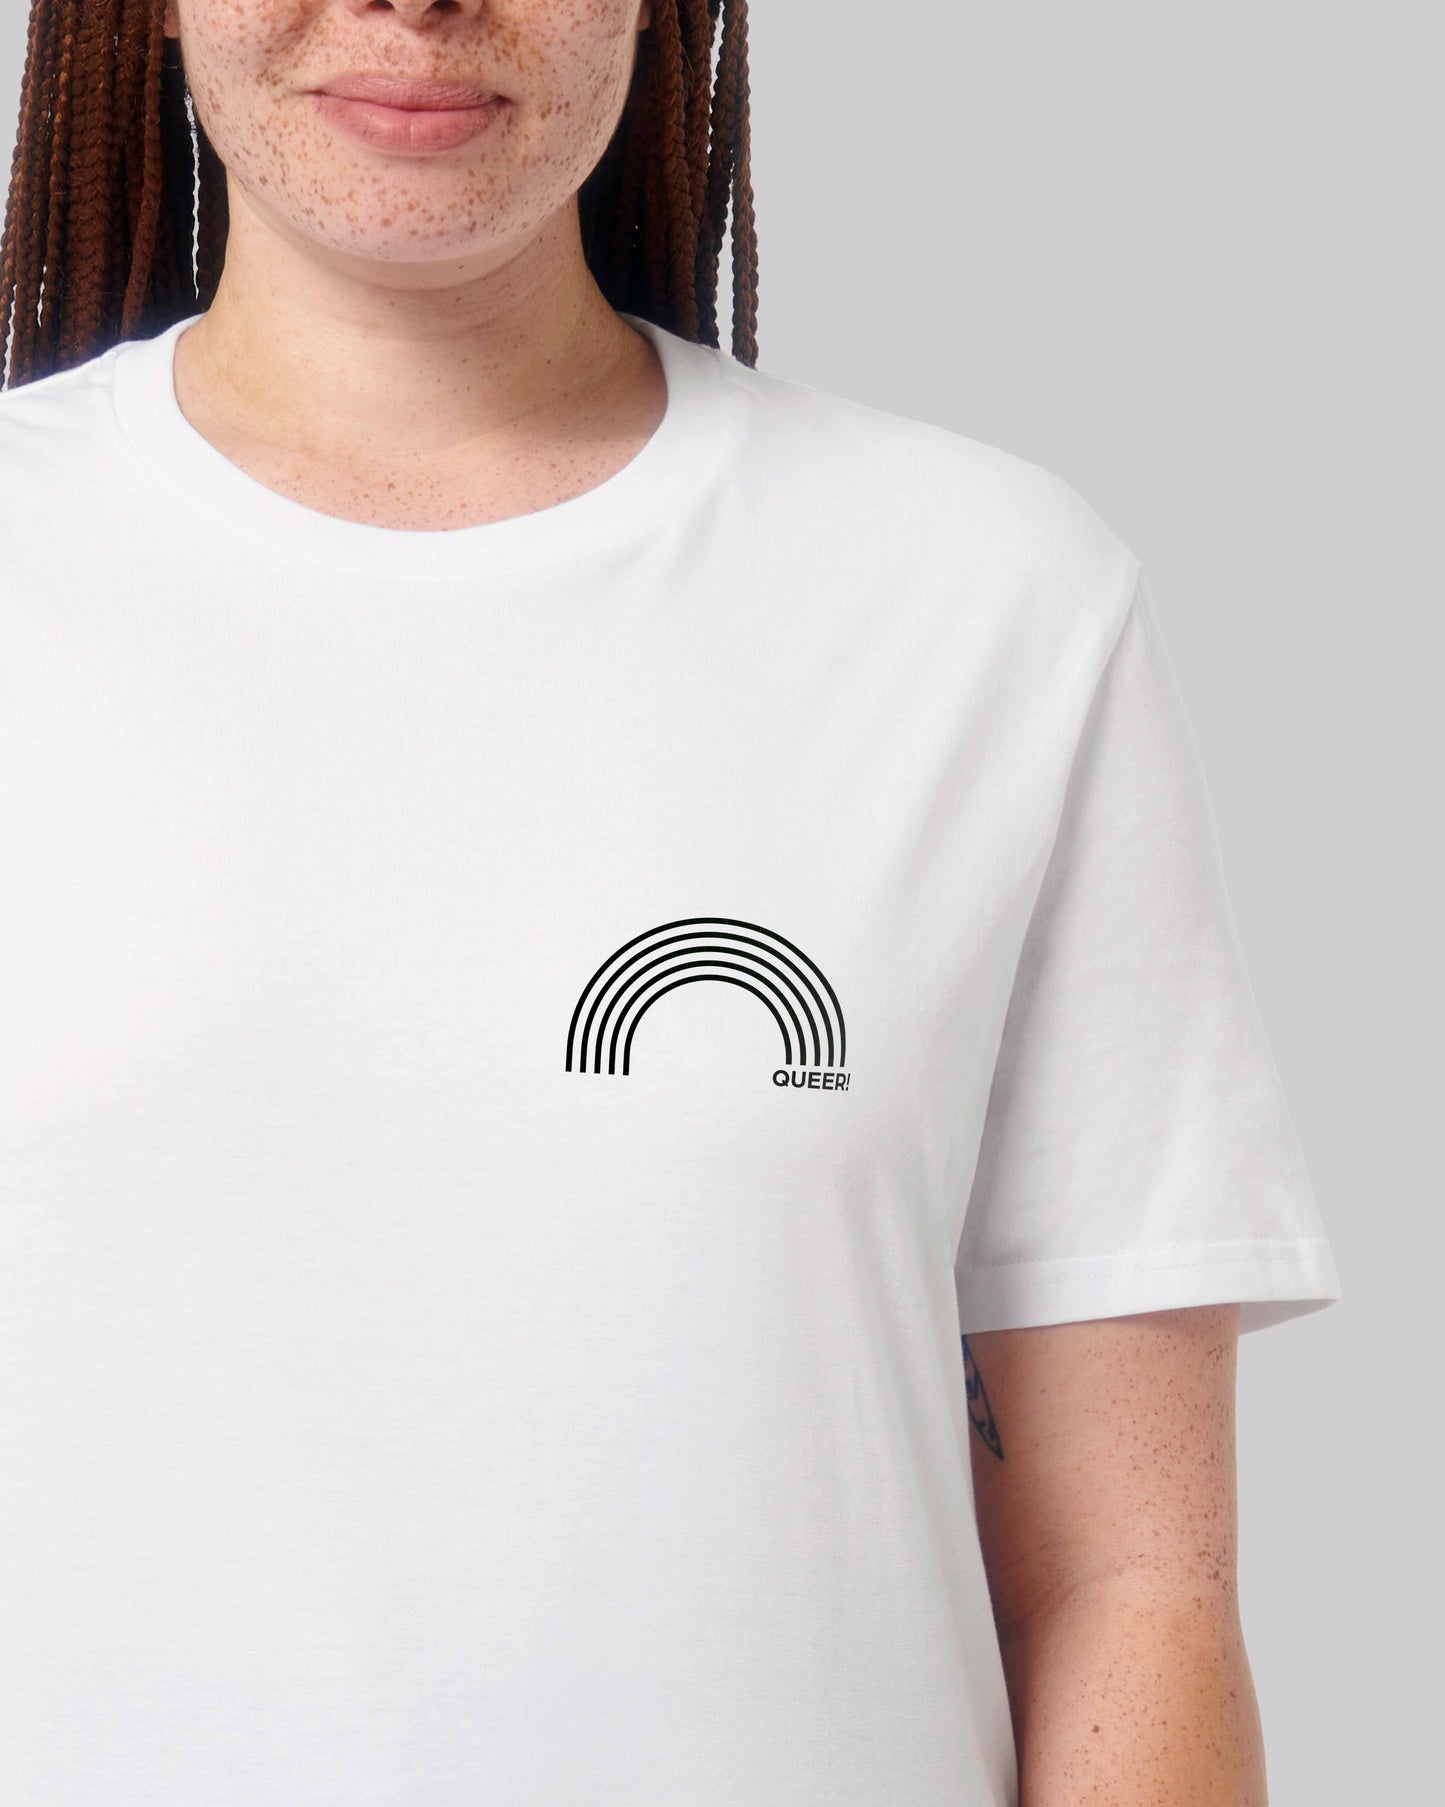 EINHORST® unisex Organic Shirt in Weiß mit dem Motiv "queer Regenbogen" in der Kombination schwarzer Regenbogen mit schwarzer Schrift, Bild von weiblicher Person mit Shirt